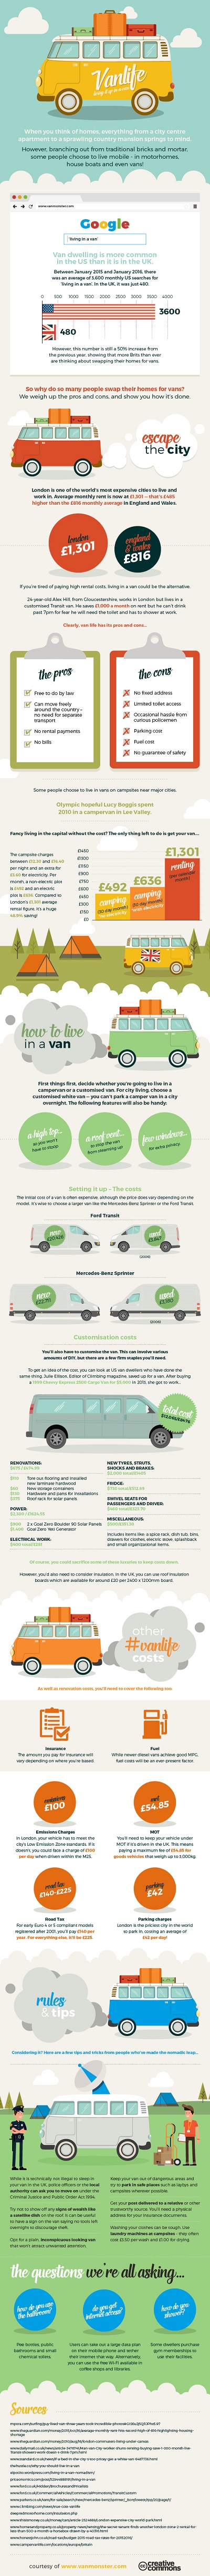 Van Monster #VanLife v2 infographic